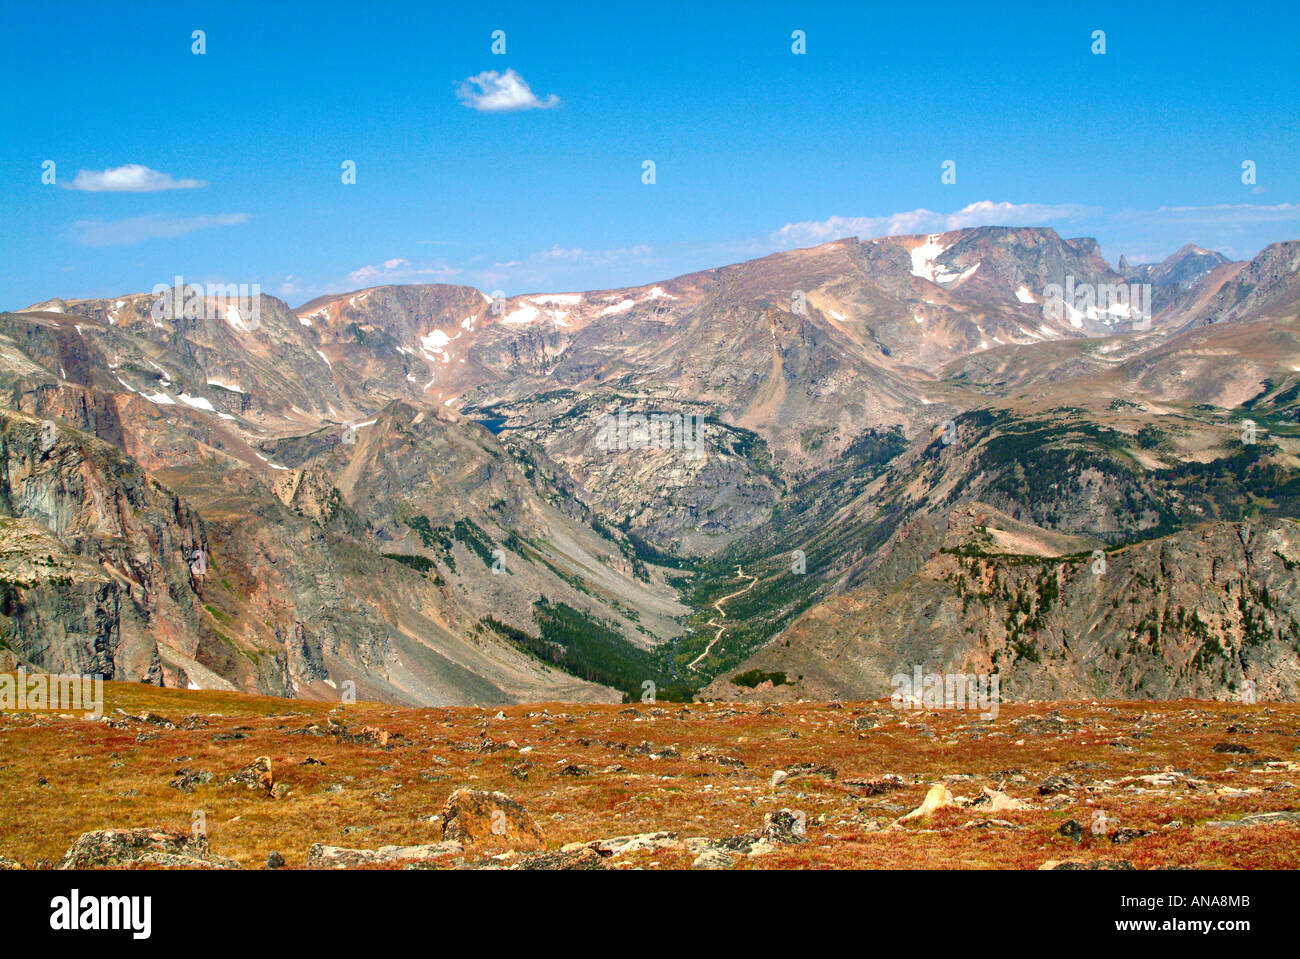 View Towards Beartooth Mountain Range on the Montana Wyoming Border USA Stock Photo